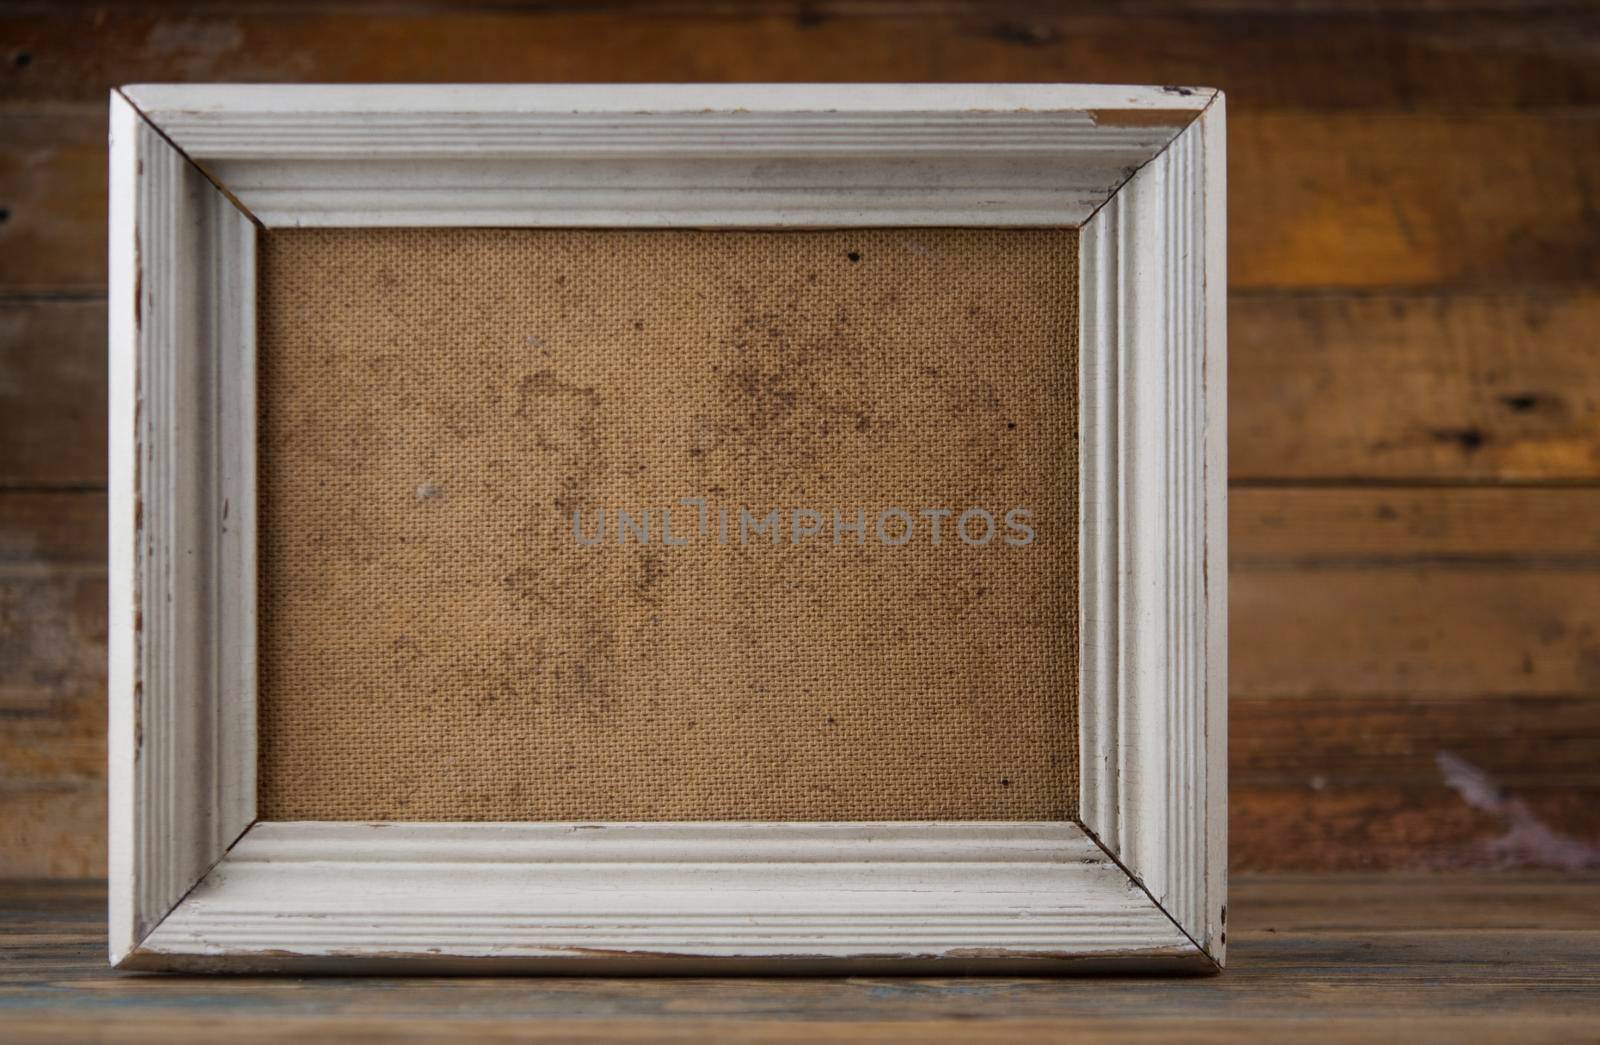 Blank frame on parquet floor by inxti